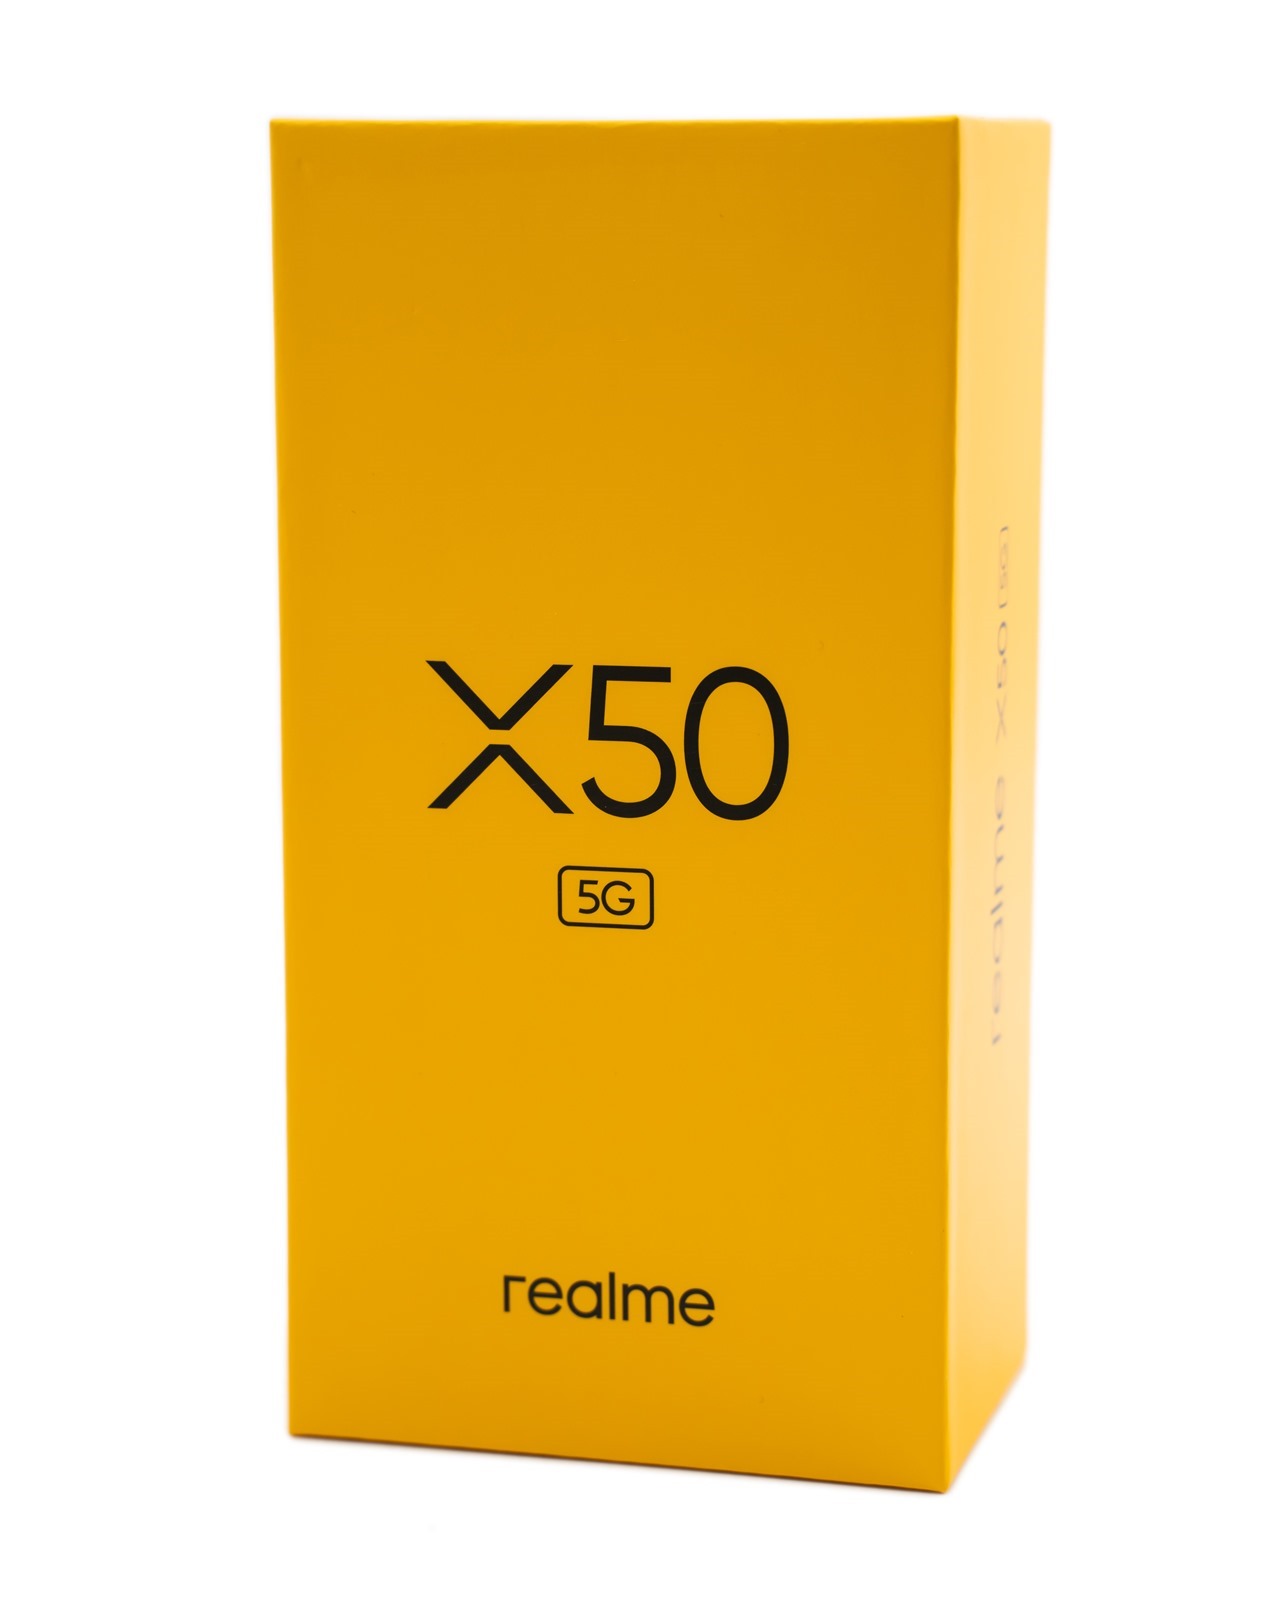 萬元輕鬆入手 5G 手機！Realme X50 性能測試 / 續航實測 / 快充充電測試 @3C 達人廖阿輝